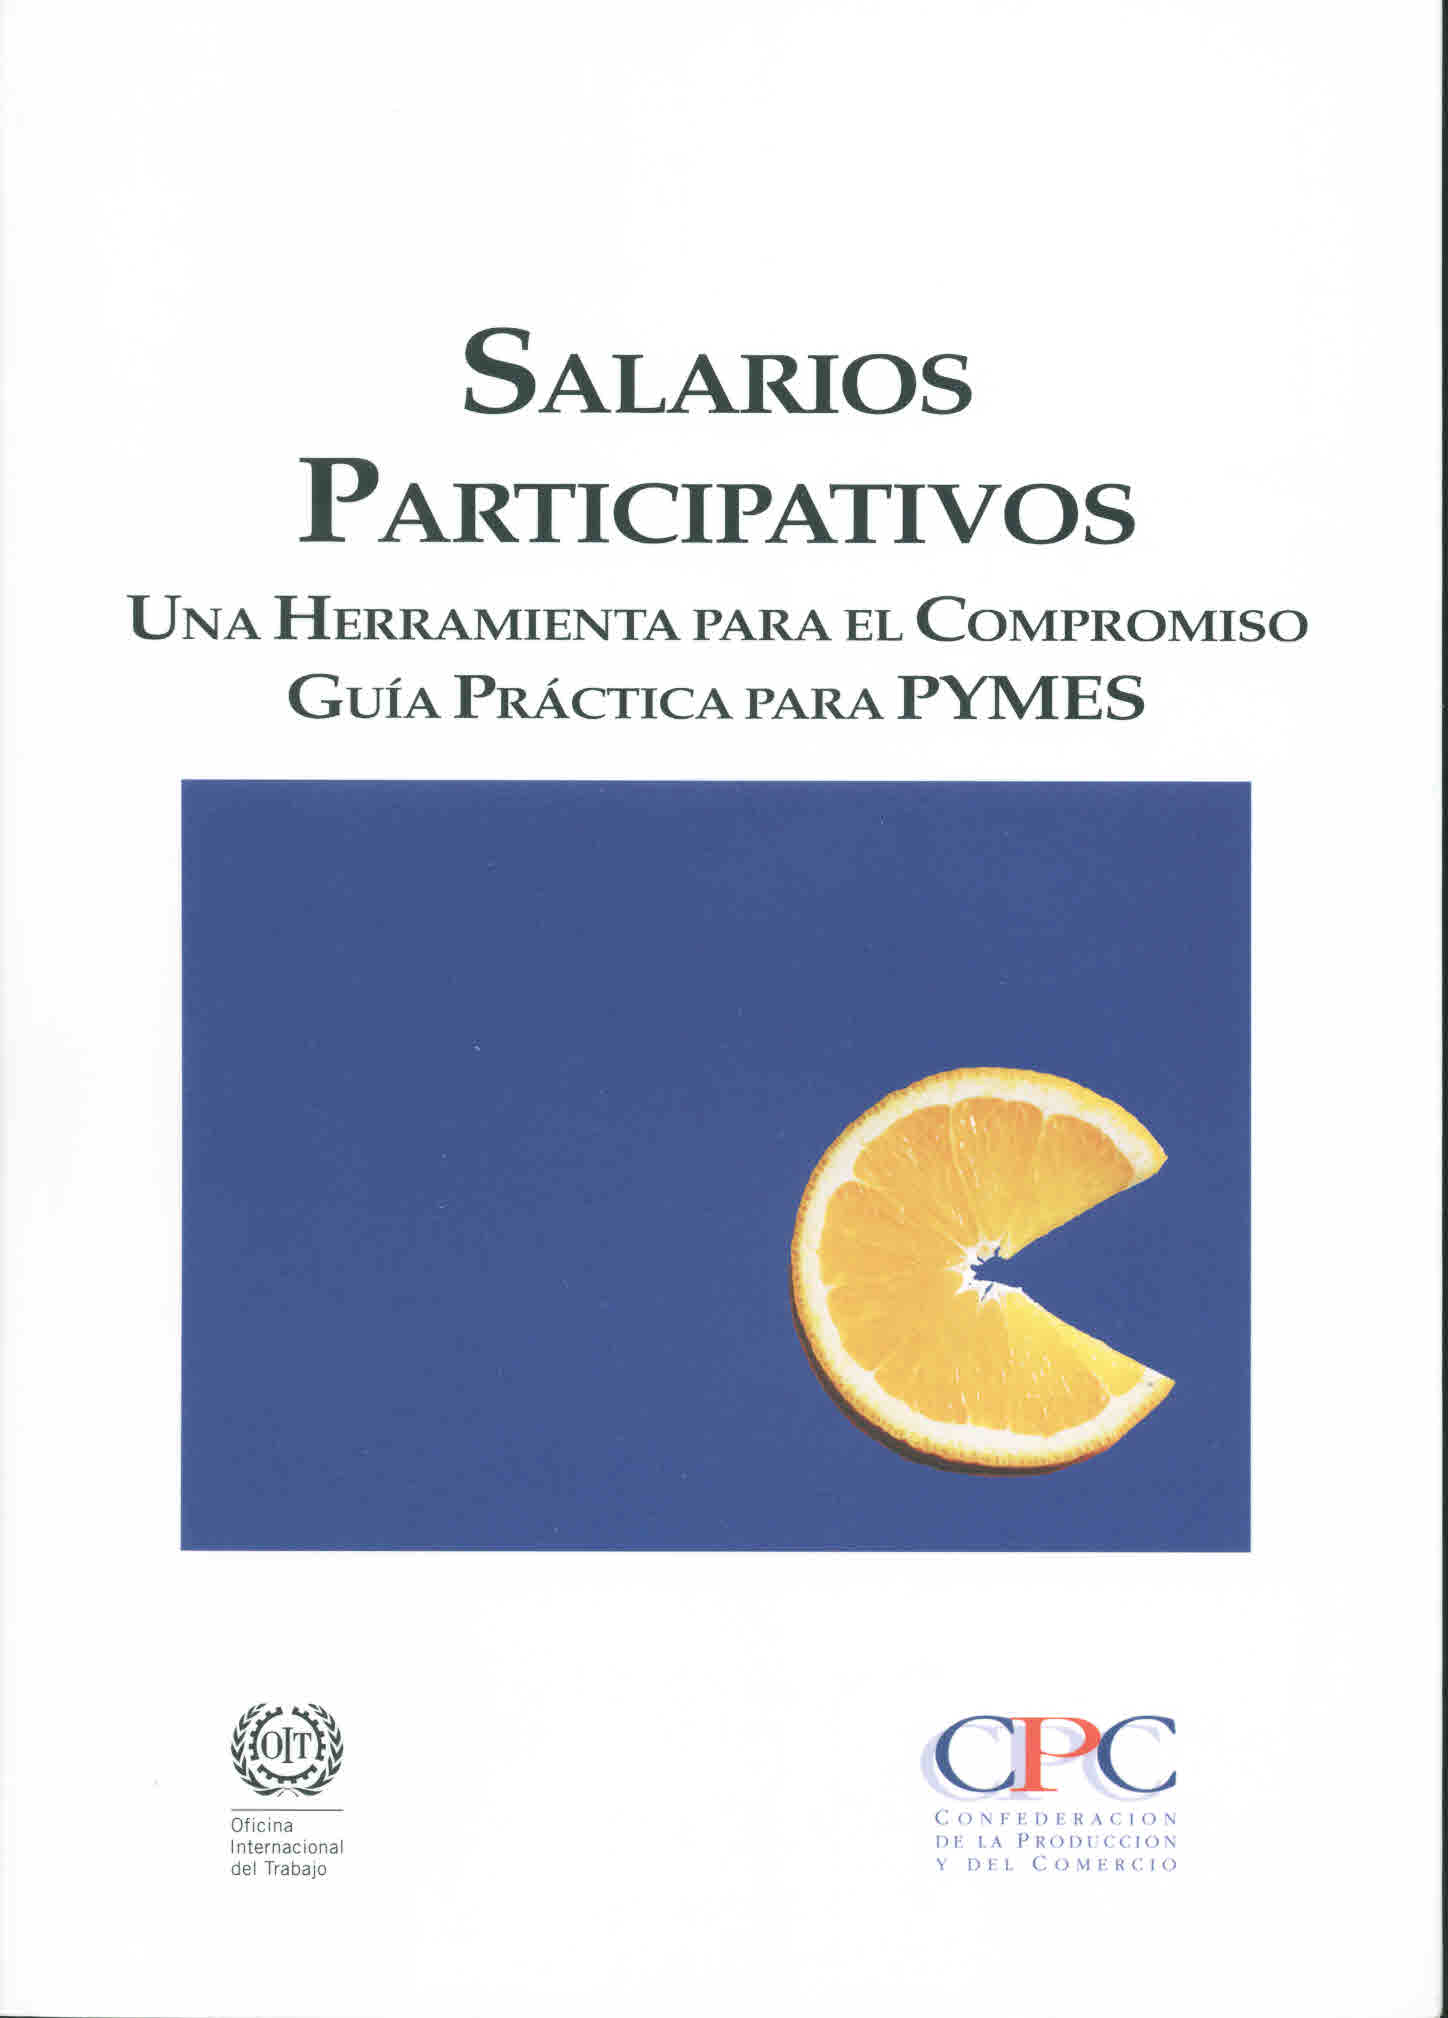 Salarios participativos. Una herramienta para el compromiso. Guía práctica para pymes